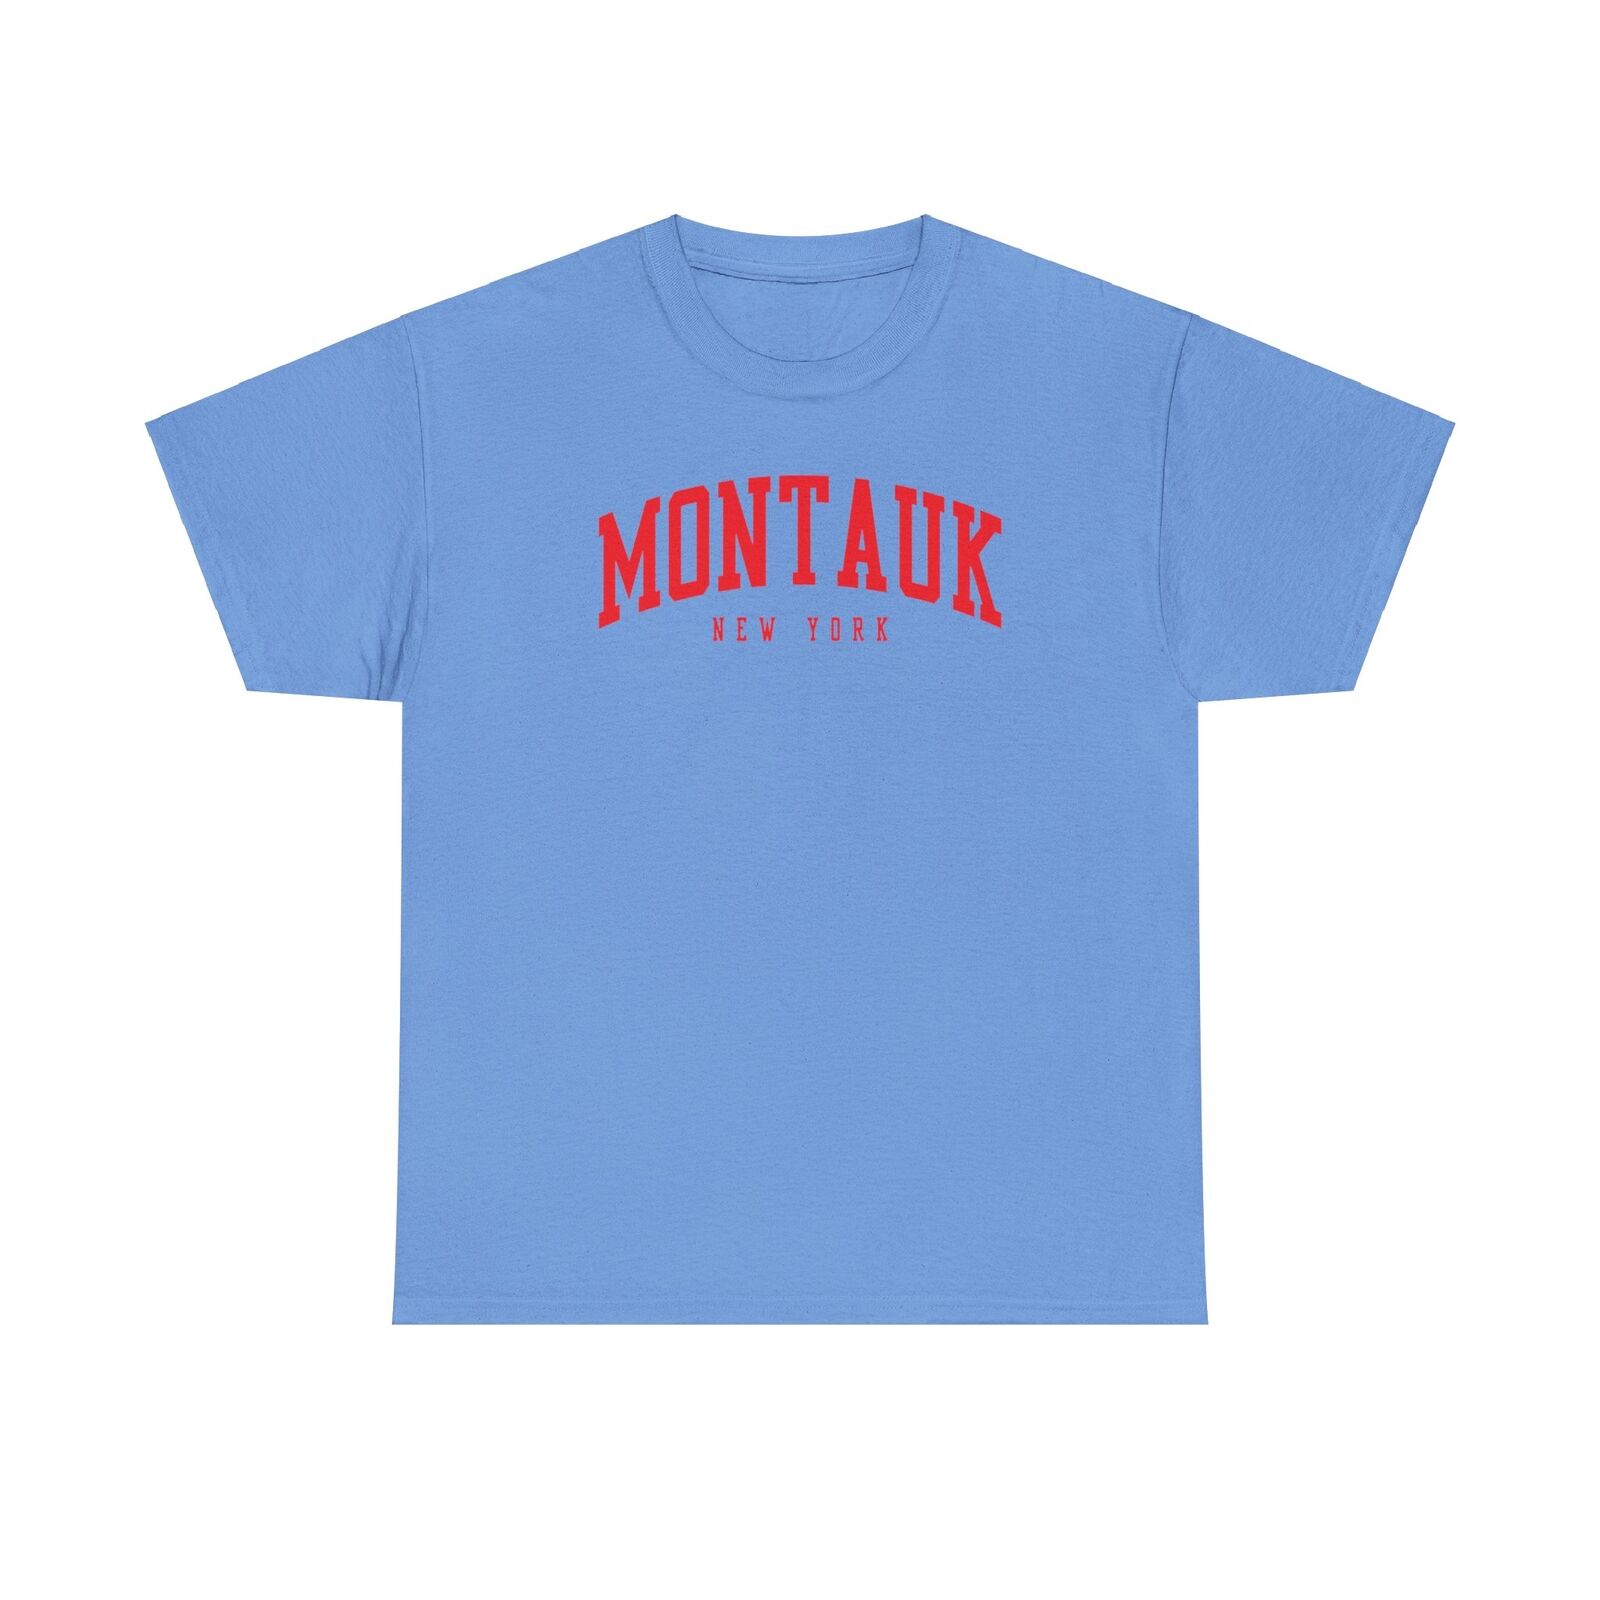 Montauk New York Shirt Gifts Tshirt Tee Crew Neck Short Sleeve